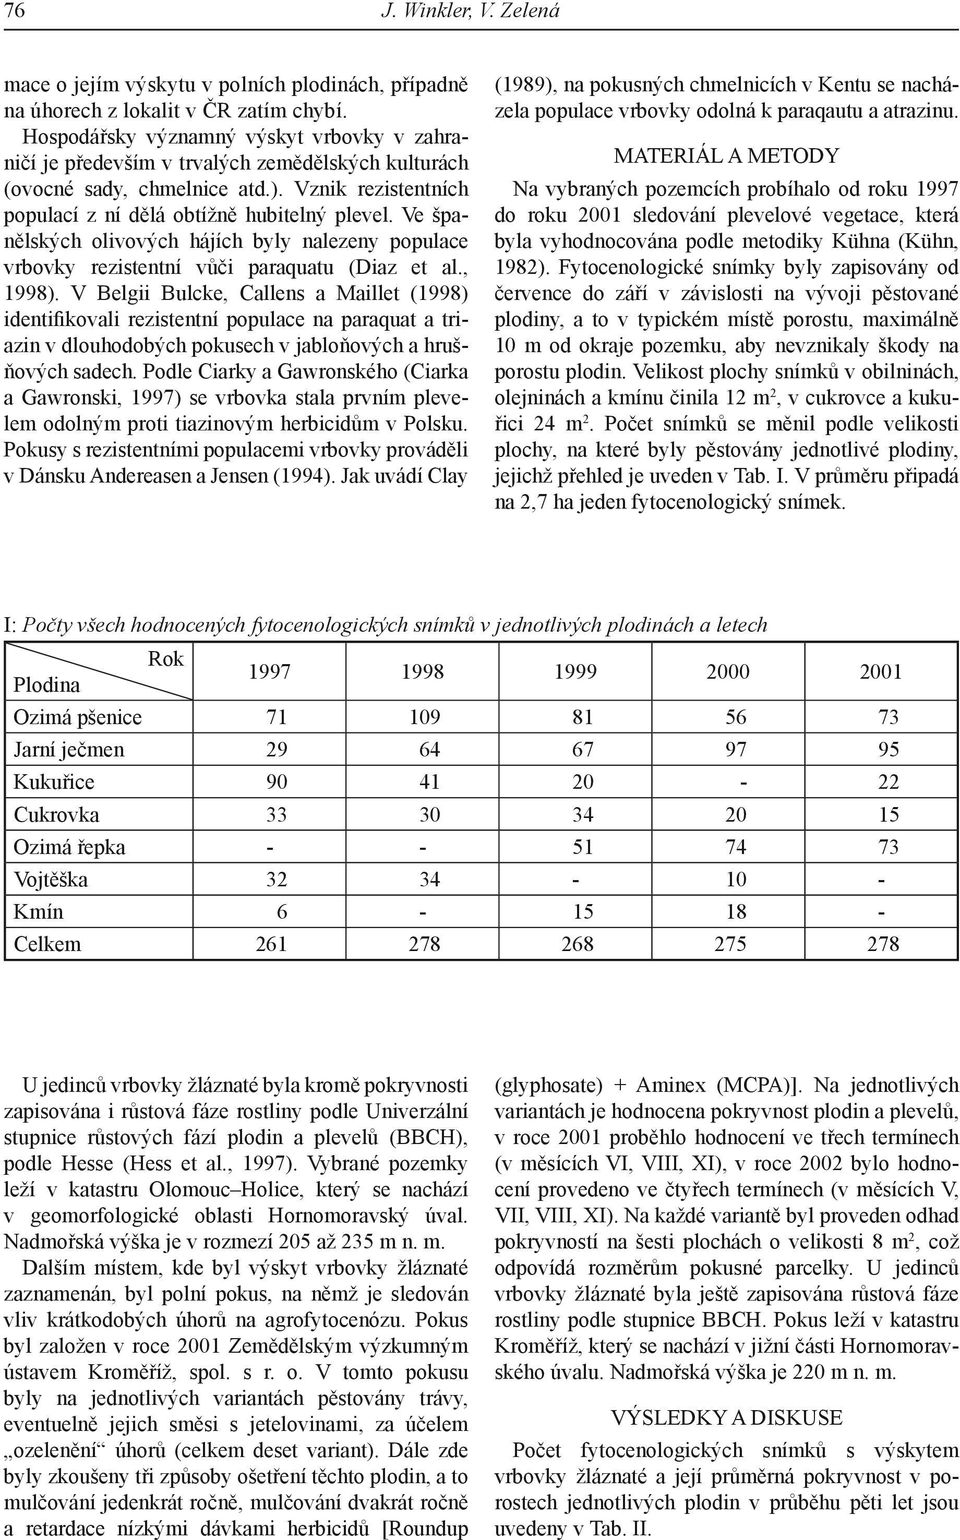 Ve španělských olivových hájích byly nalezeny populace vrbovky rezistentní vůči paraquatu (Diaz et al., 1998).